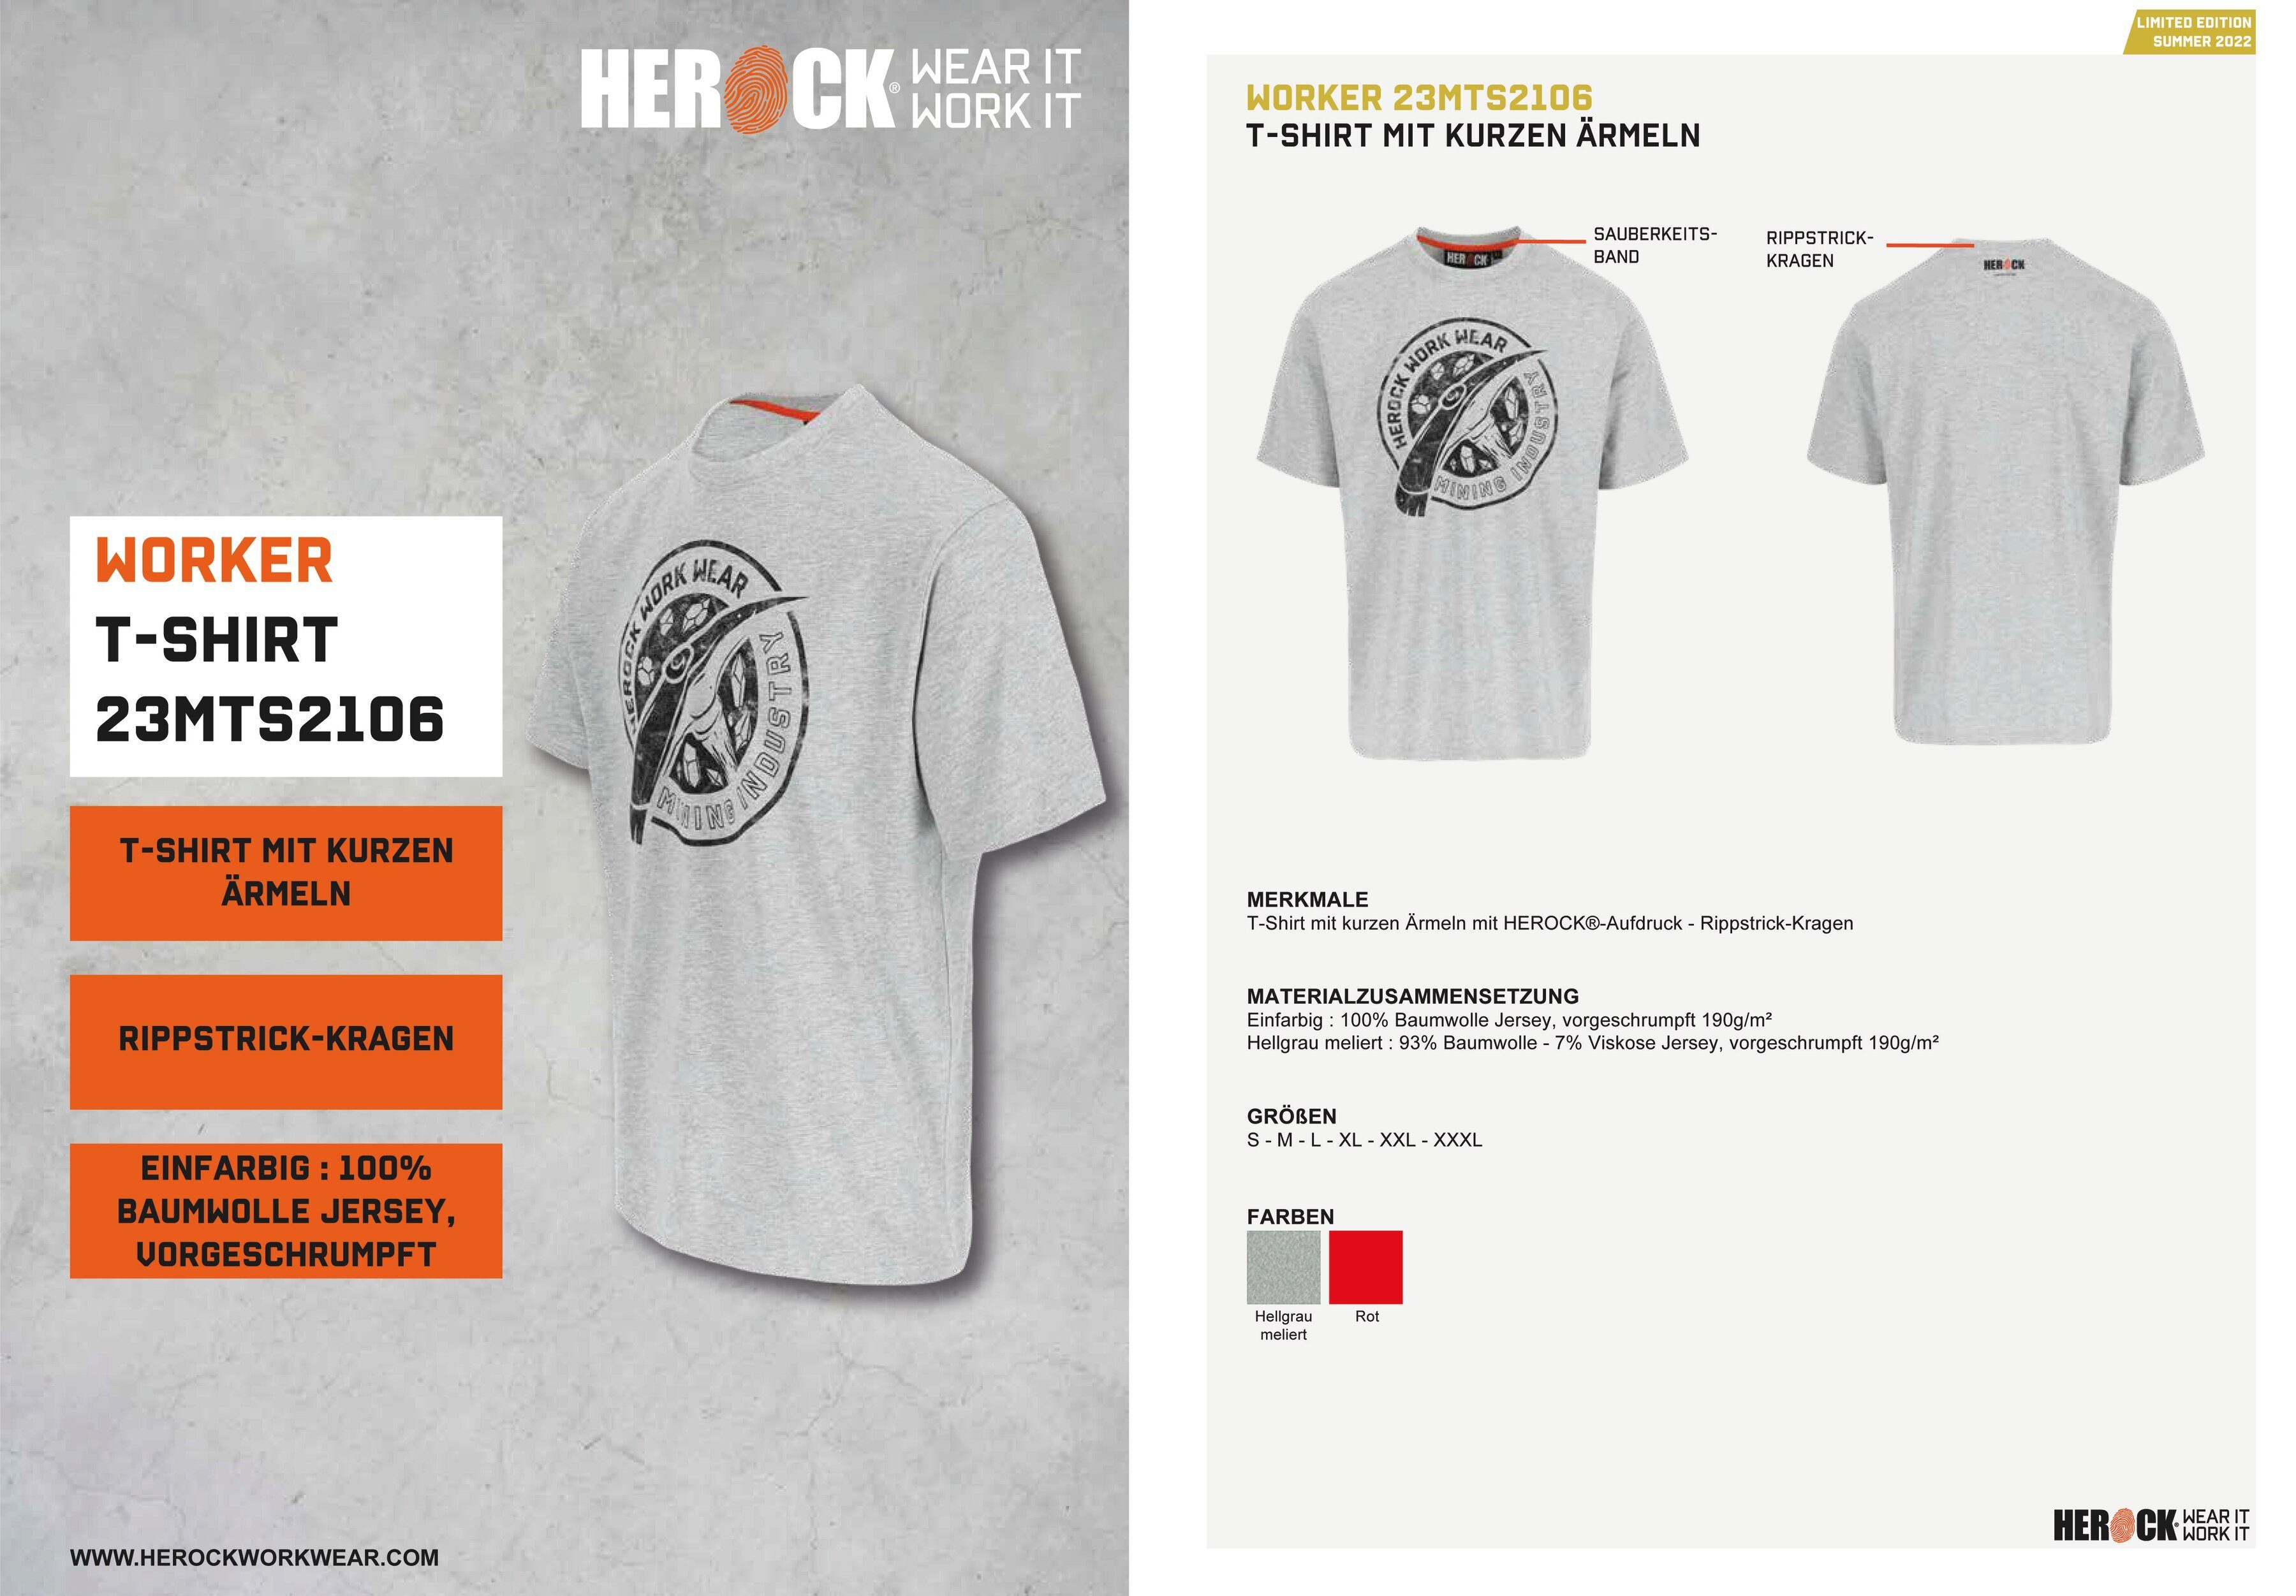 Limited Farben Herock Edition, Worker T-Shirt in erhältlich verschiedene hellgrau